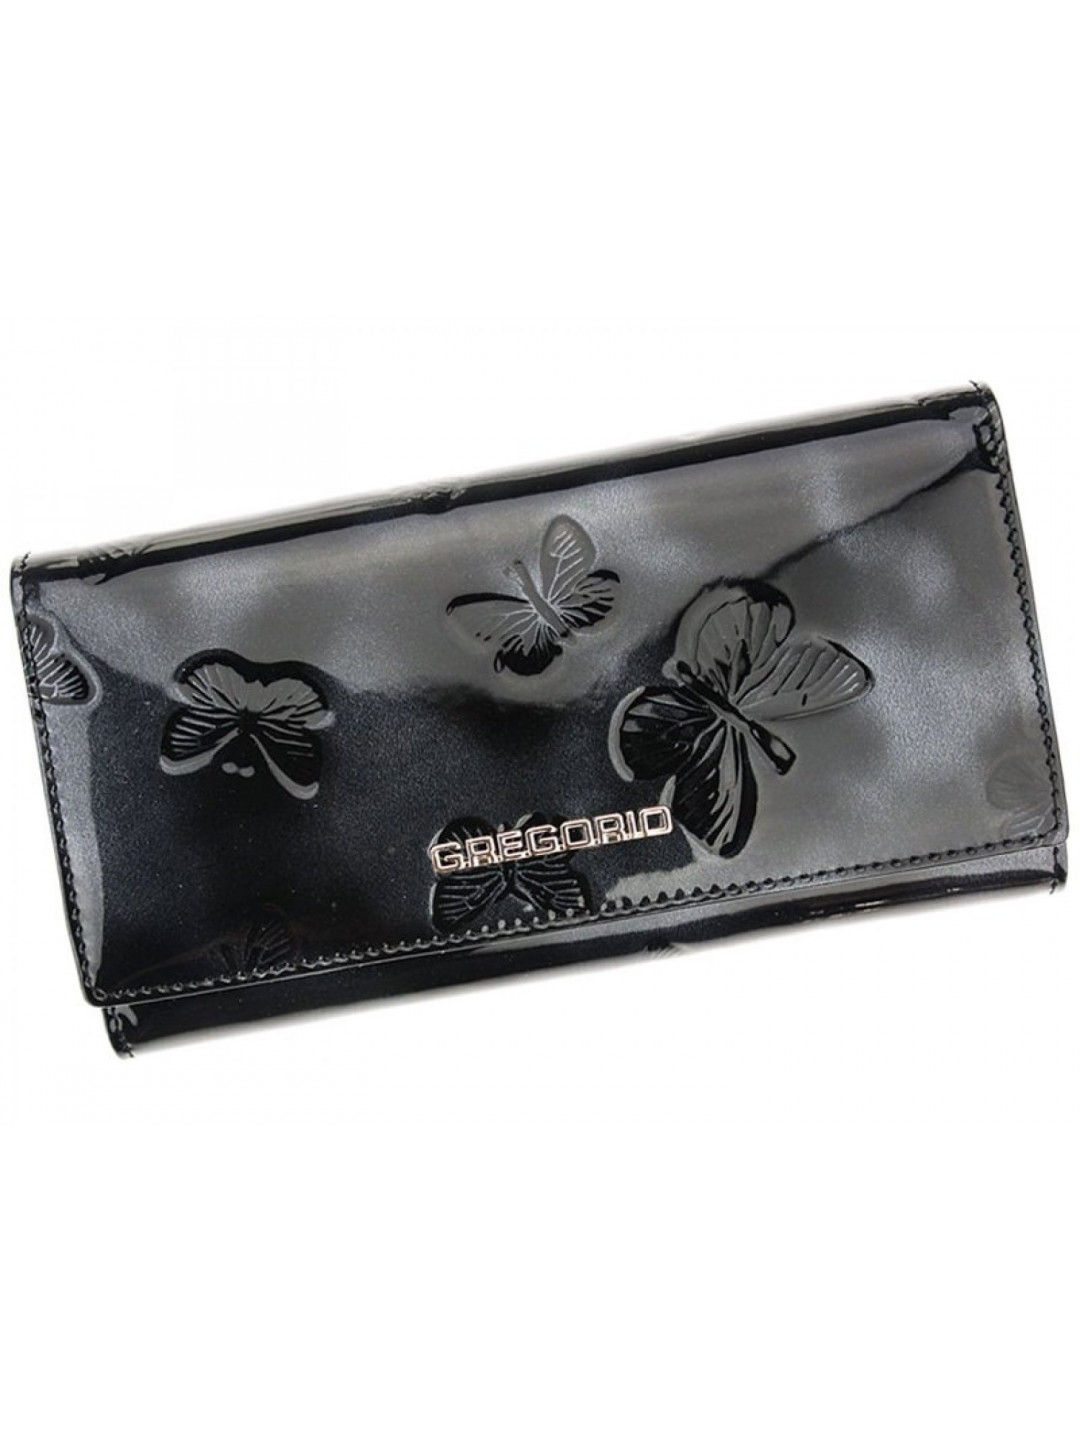 Luxusní dámská kožená peněženka s motýlkovým vzorem Anndree černá